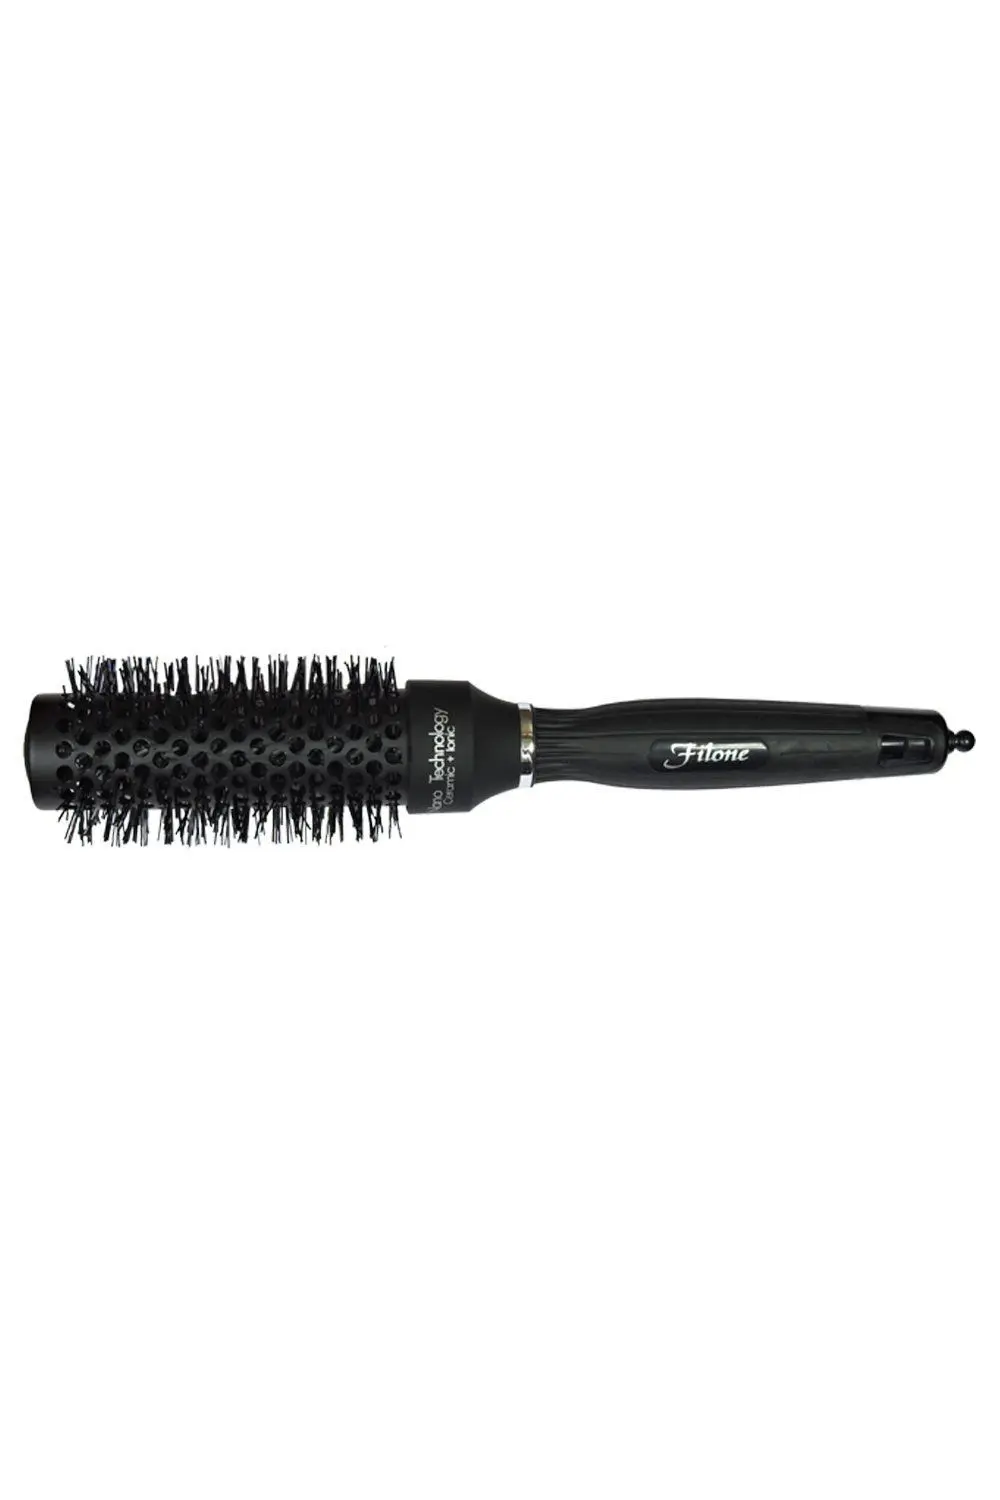 Filone Hot Curl Brush 9516CW